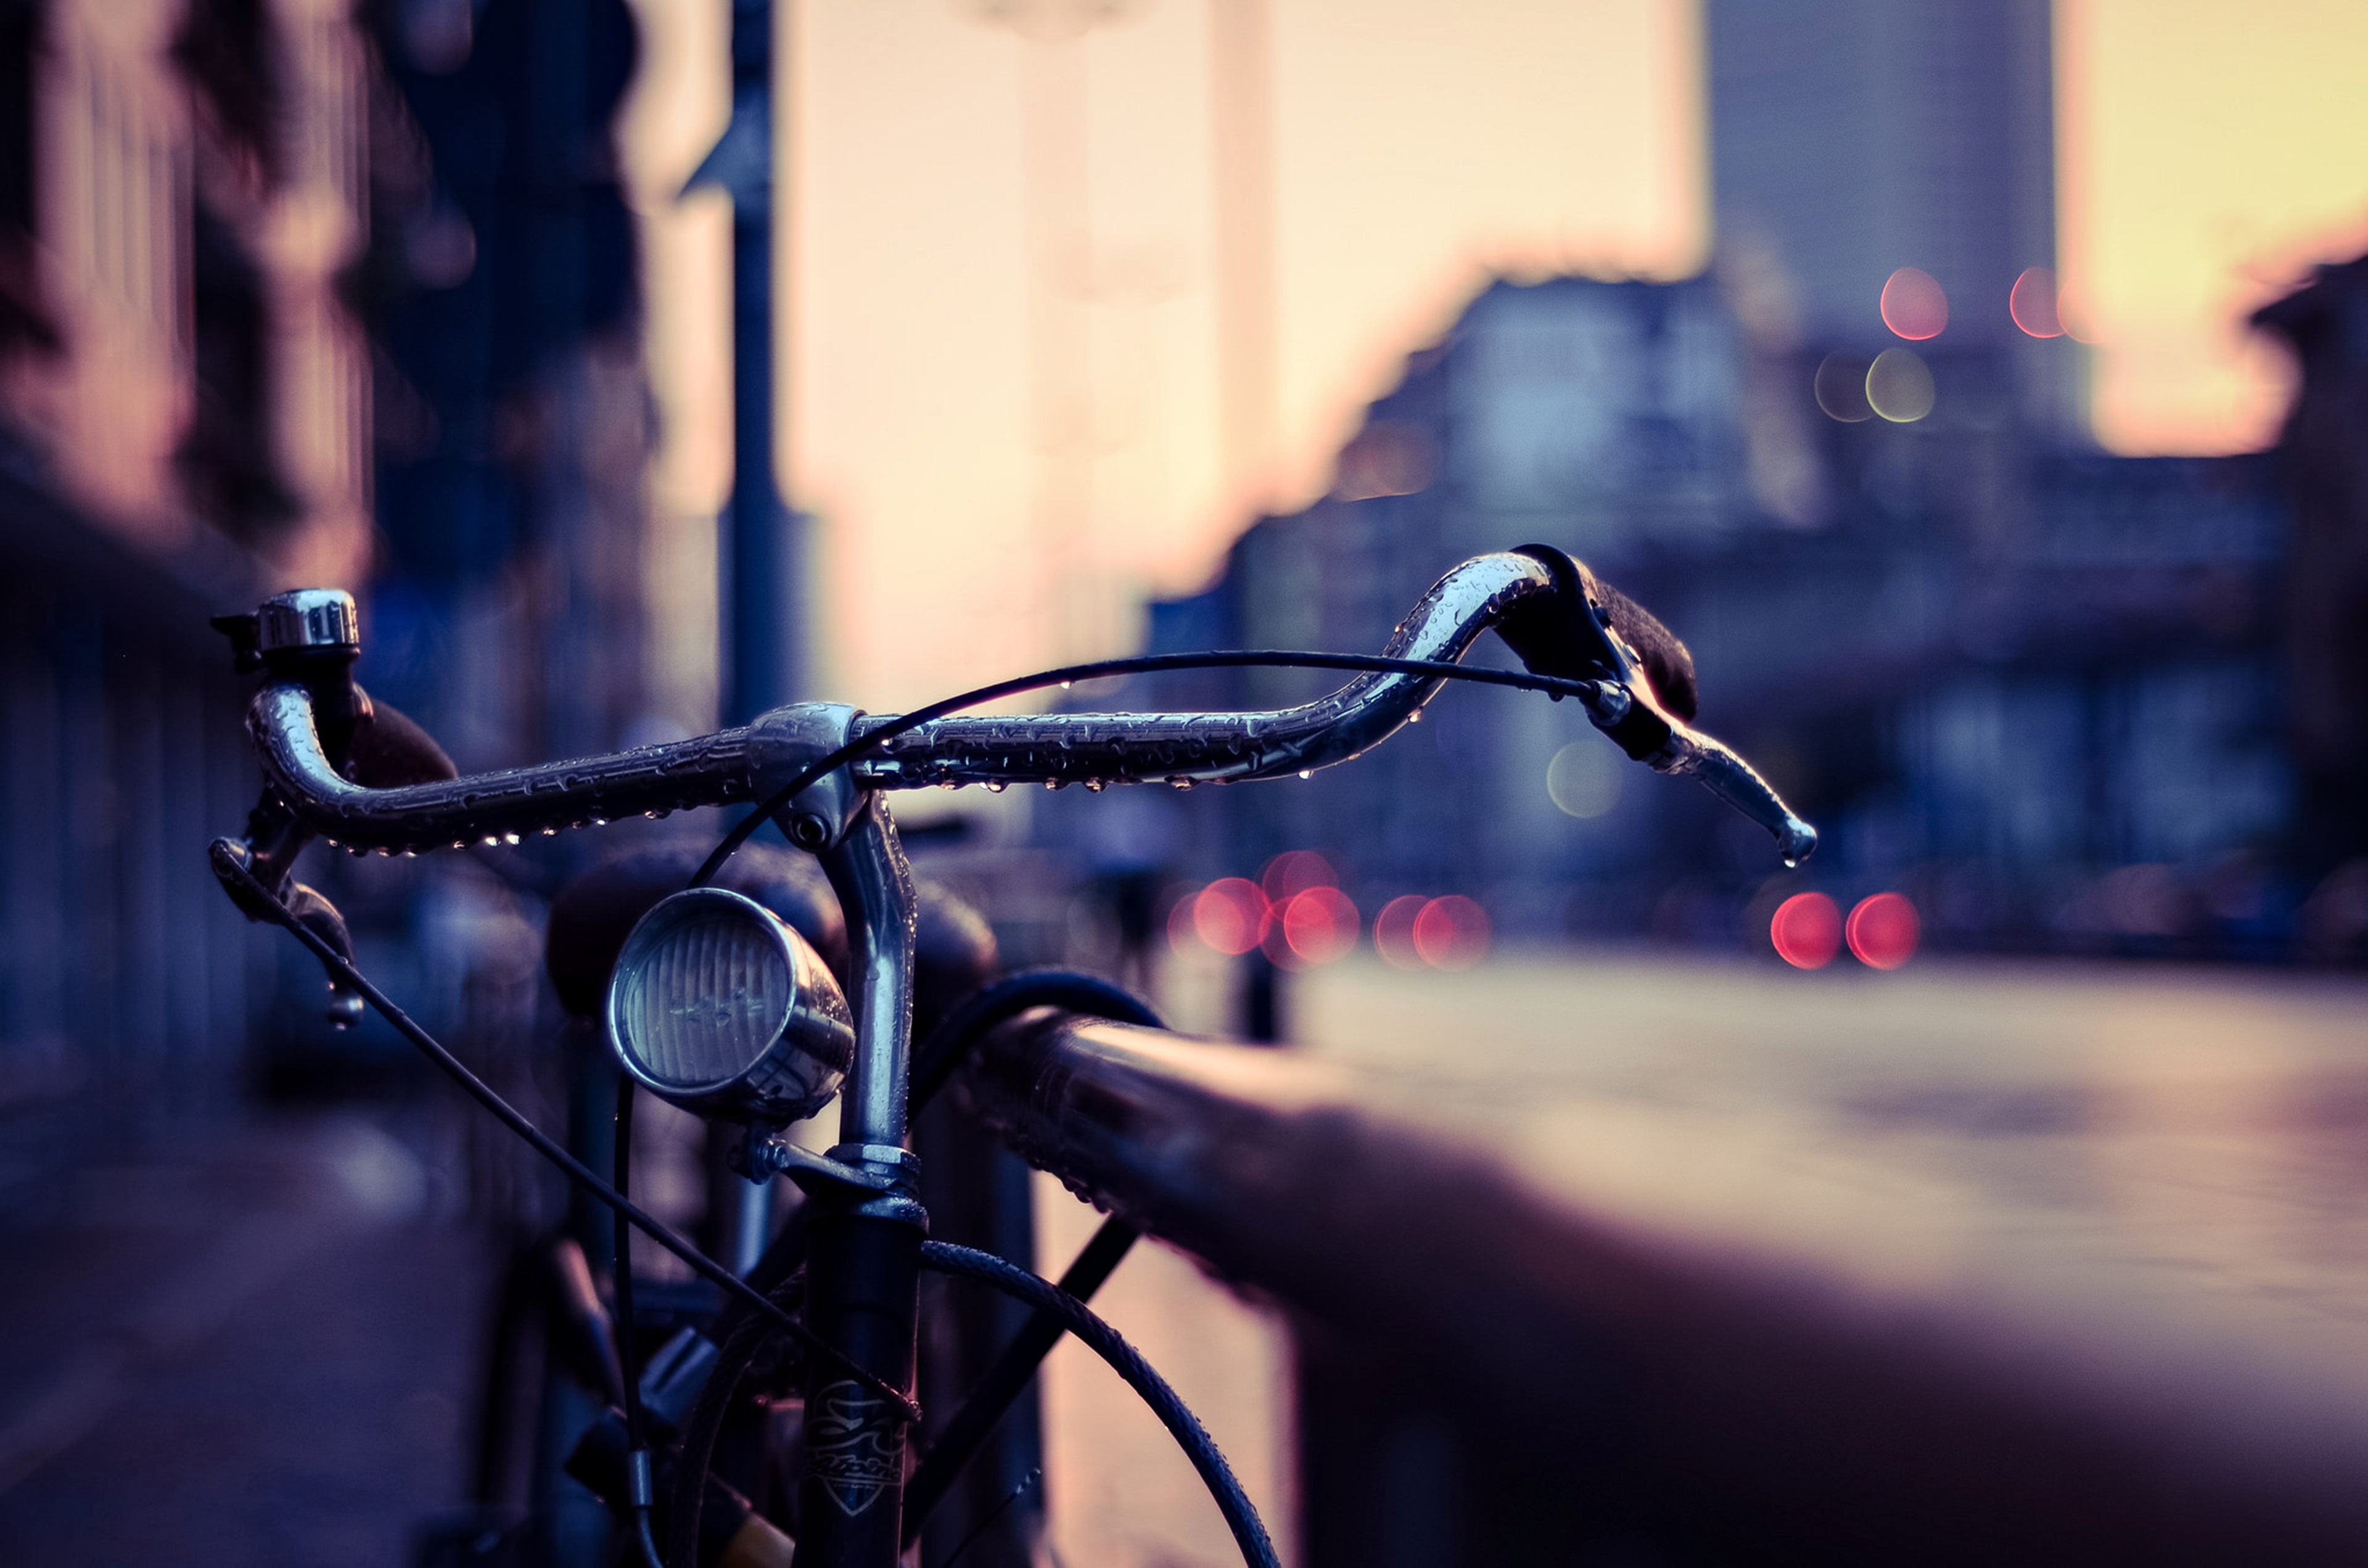 bicycle, bike, rain, vehicles, city